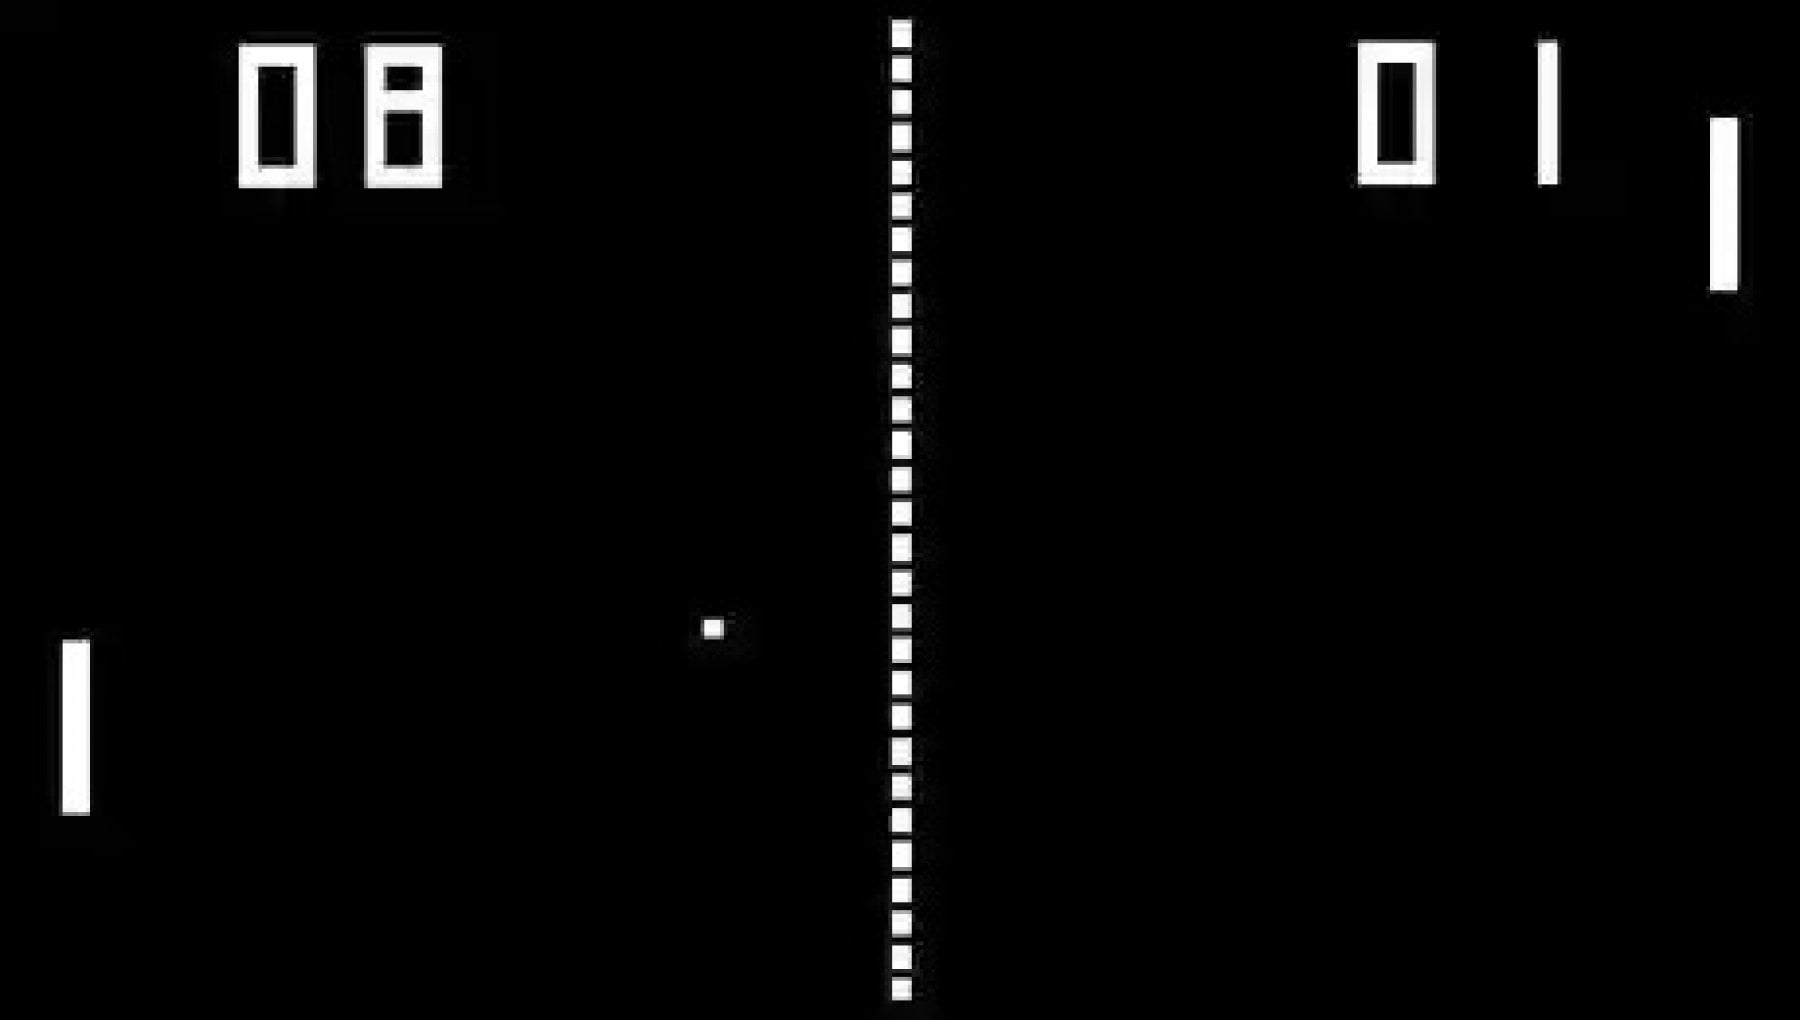 Nasce Atari, lancia Pong e inizia l’era dei videogiochi